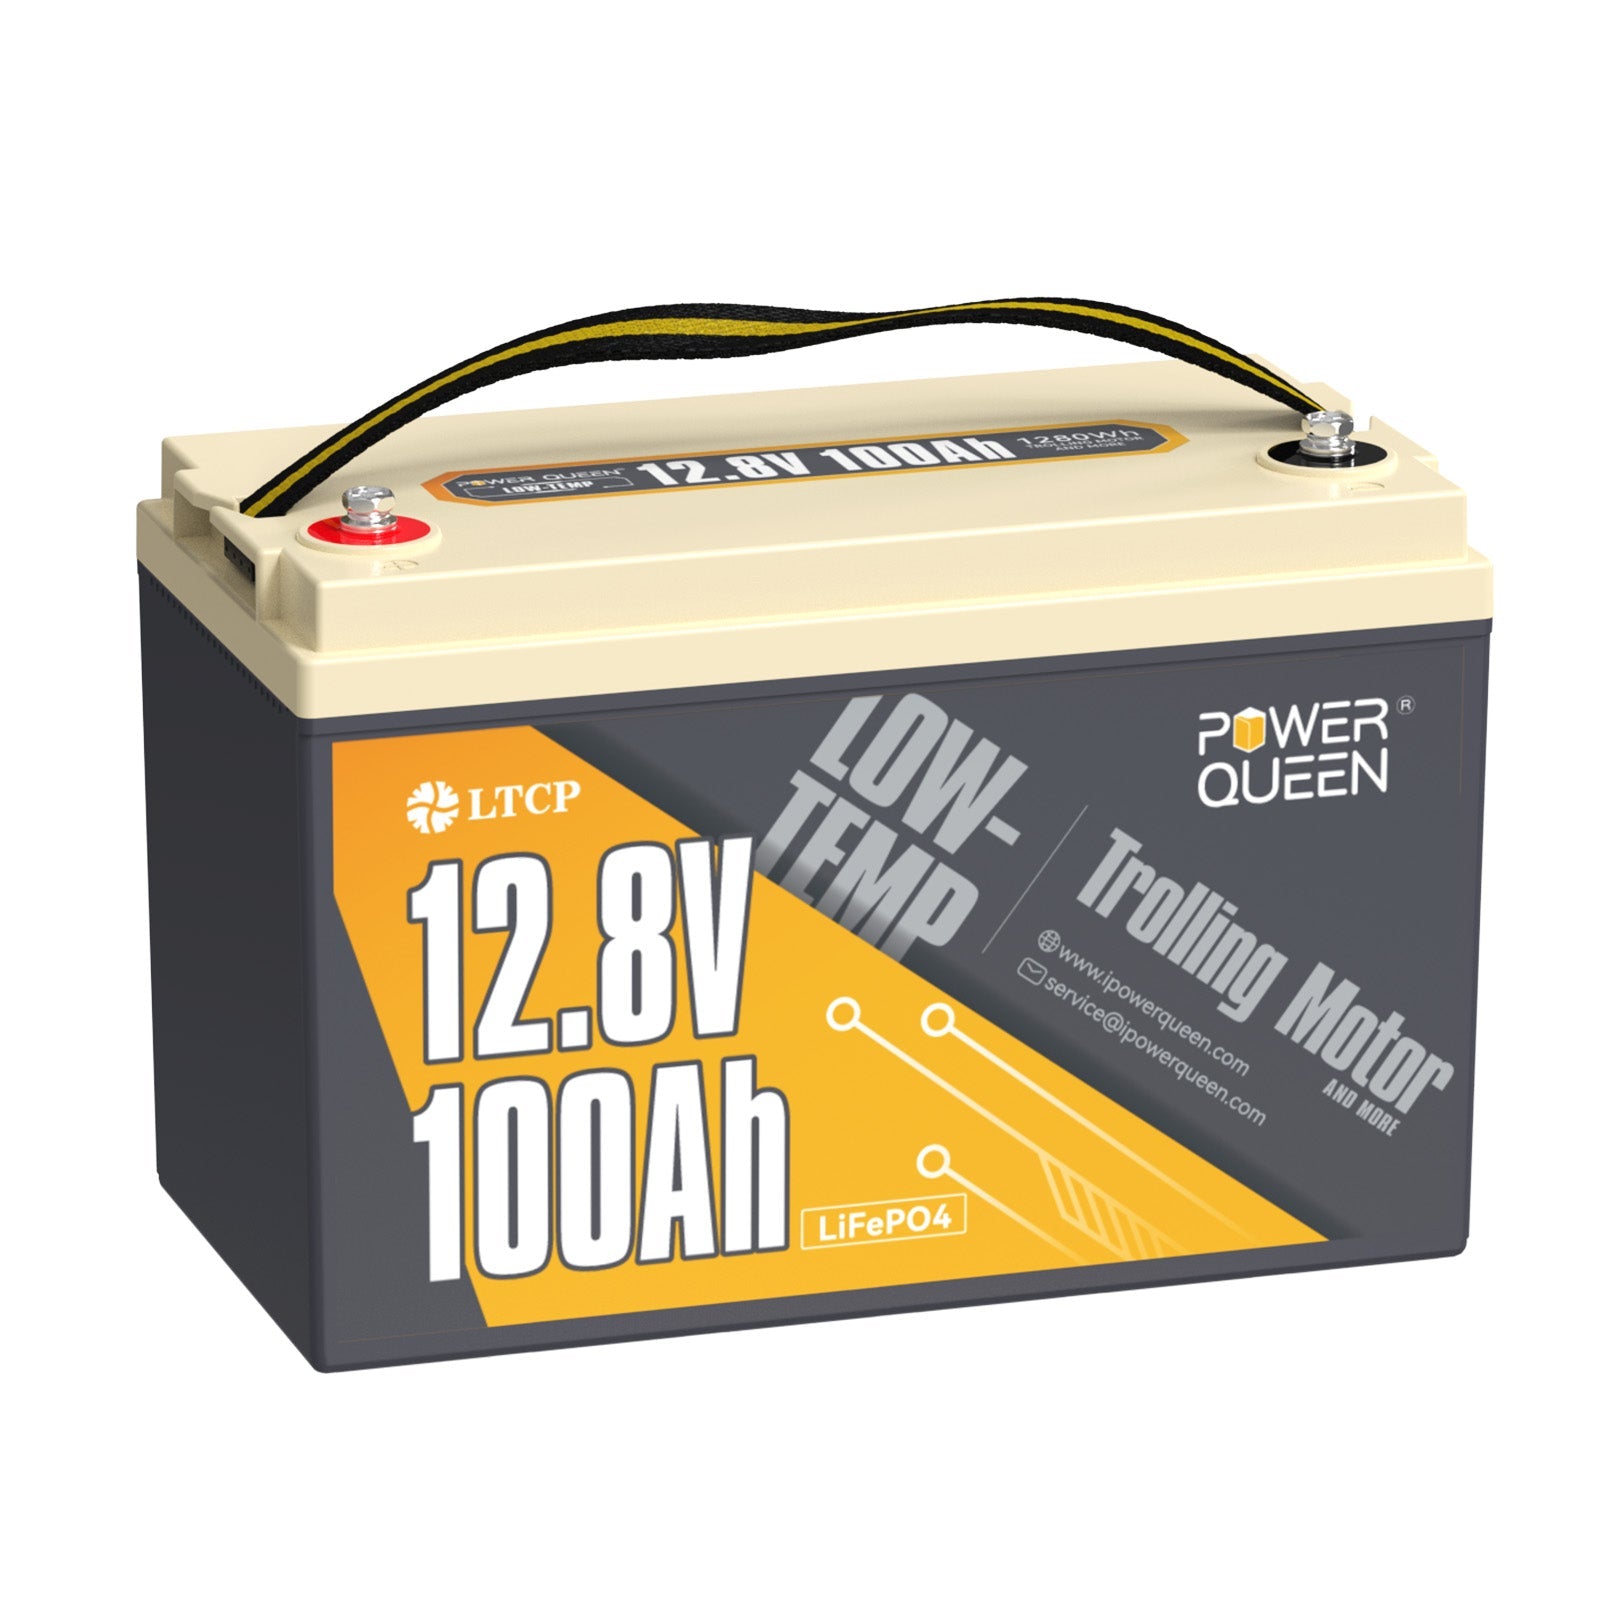 12,8V 100Ah Lithium Batterie